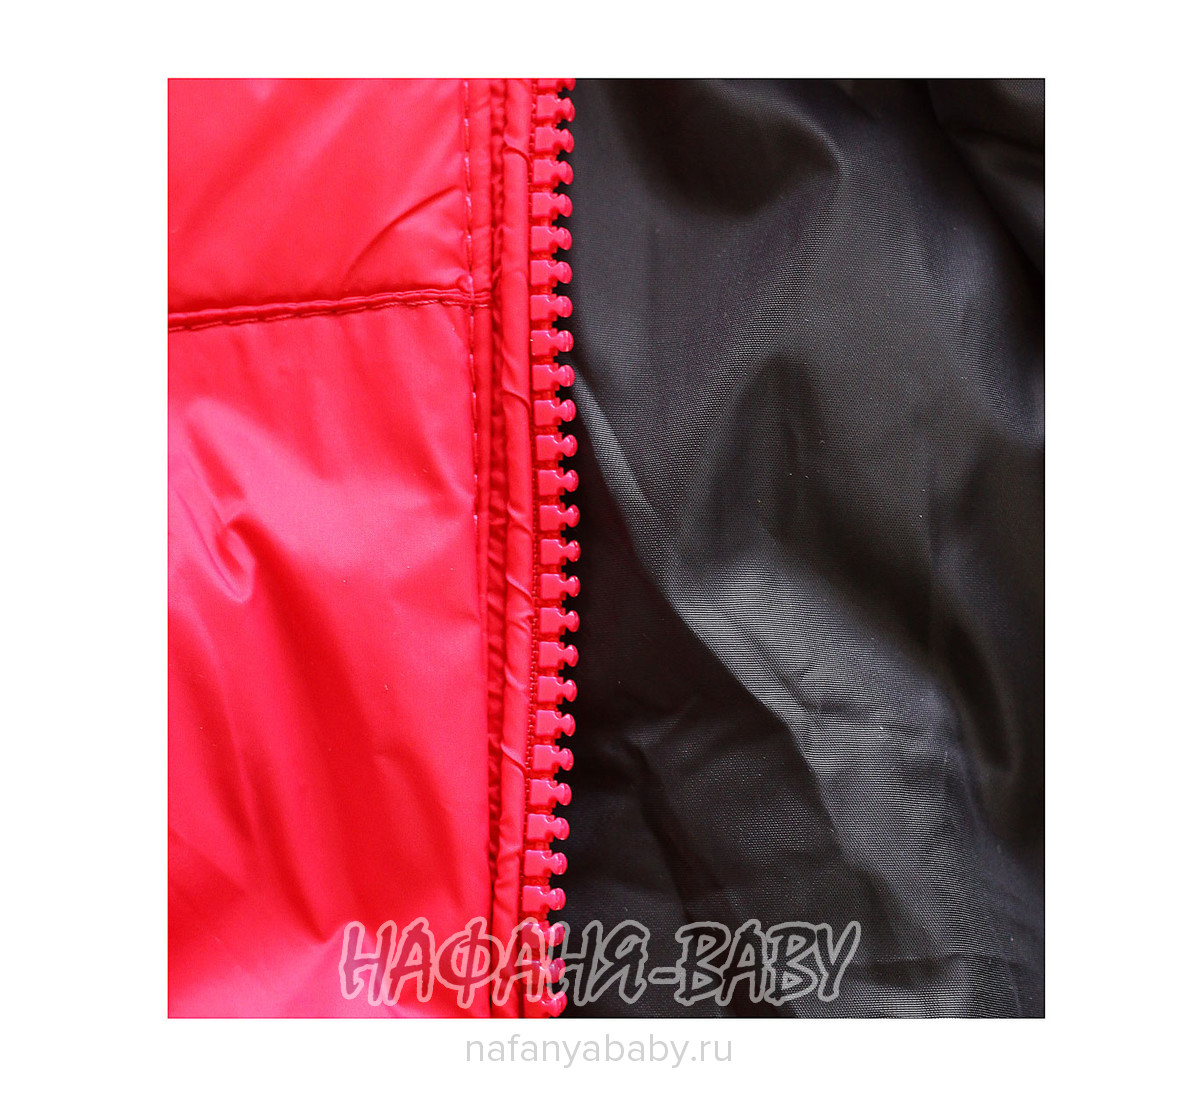 Детская демисезонная куртка W.X., купить в интернет магазине Нафаня. арт: 498.